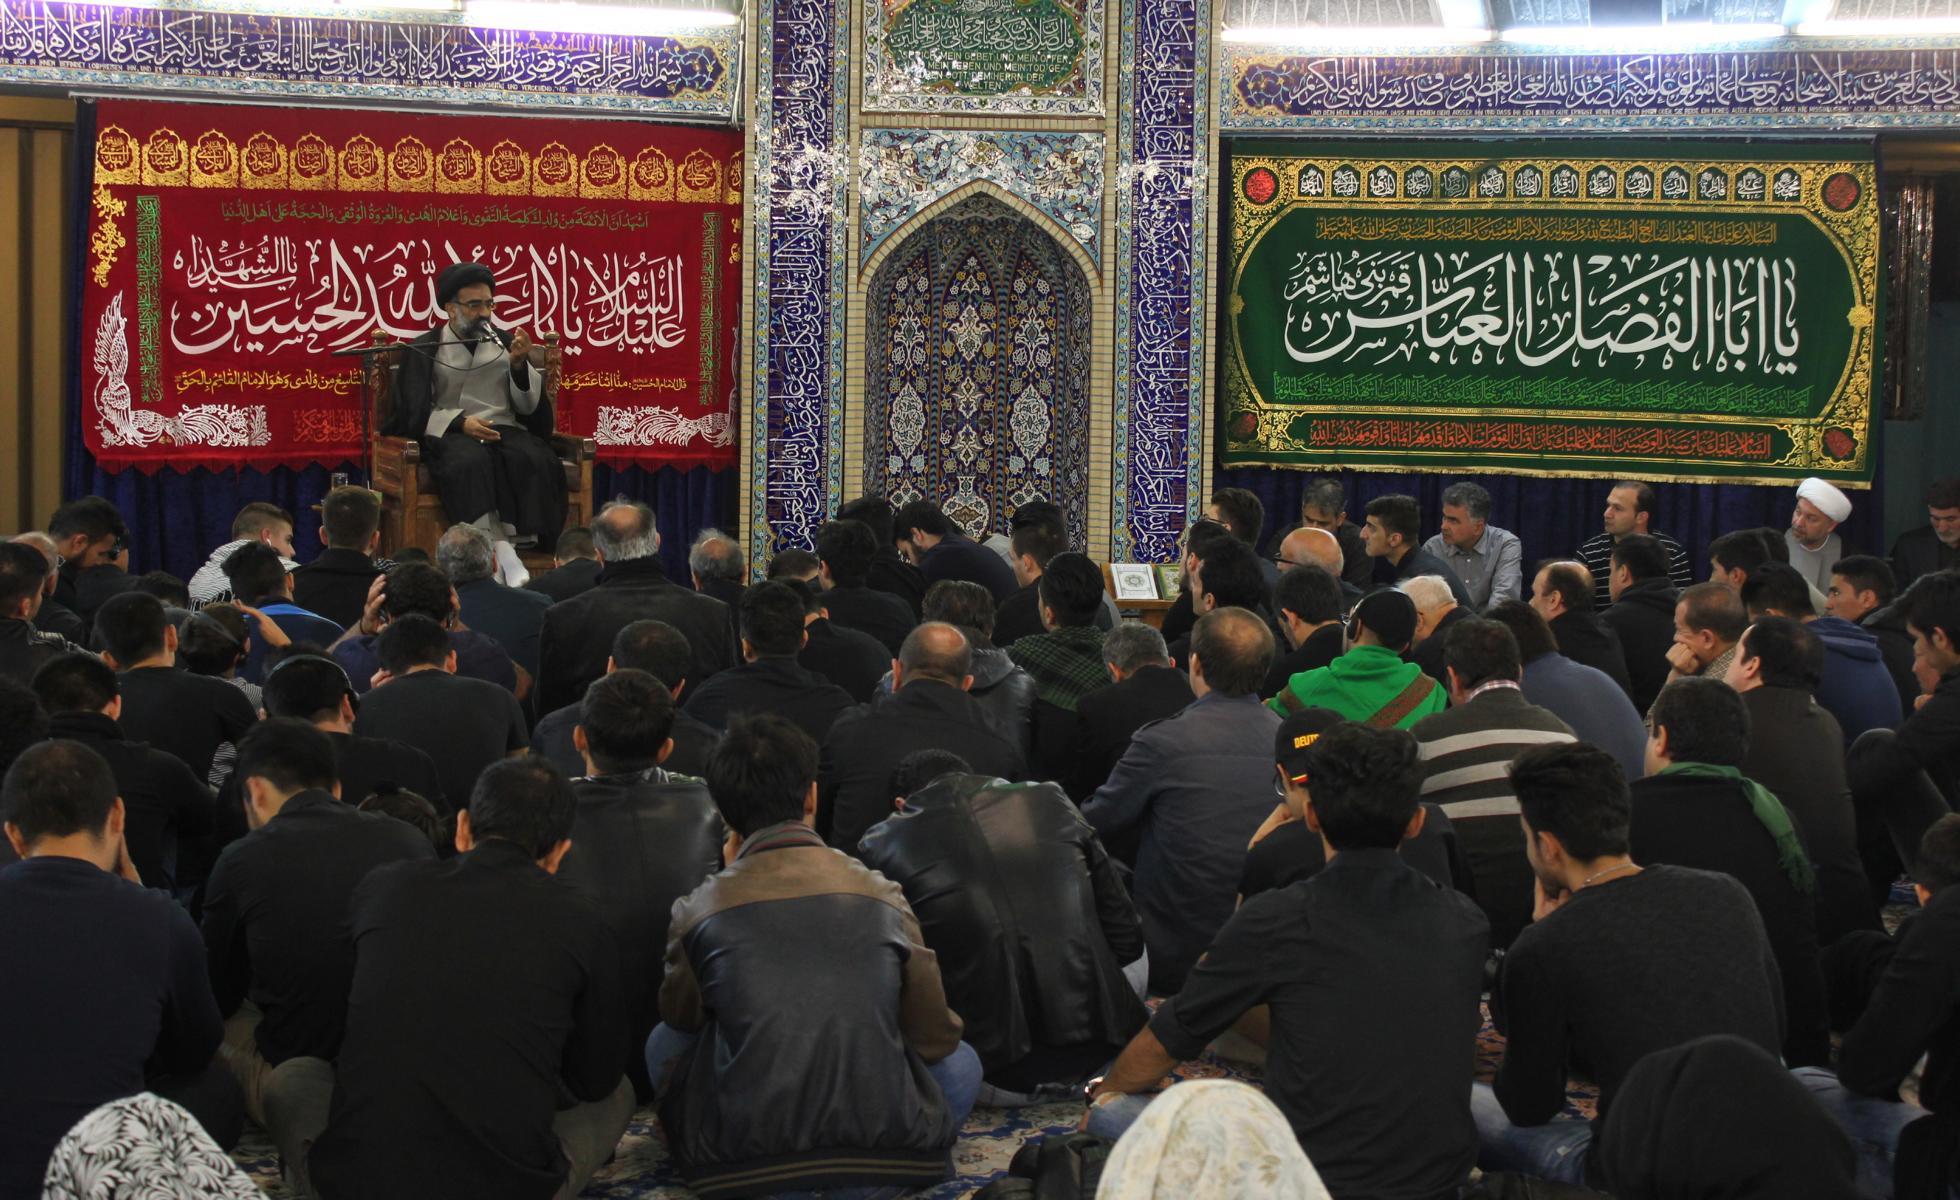  مراسم عزاداری دهه اول محرم در مسجد امام علی هامبورگ